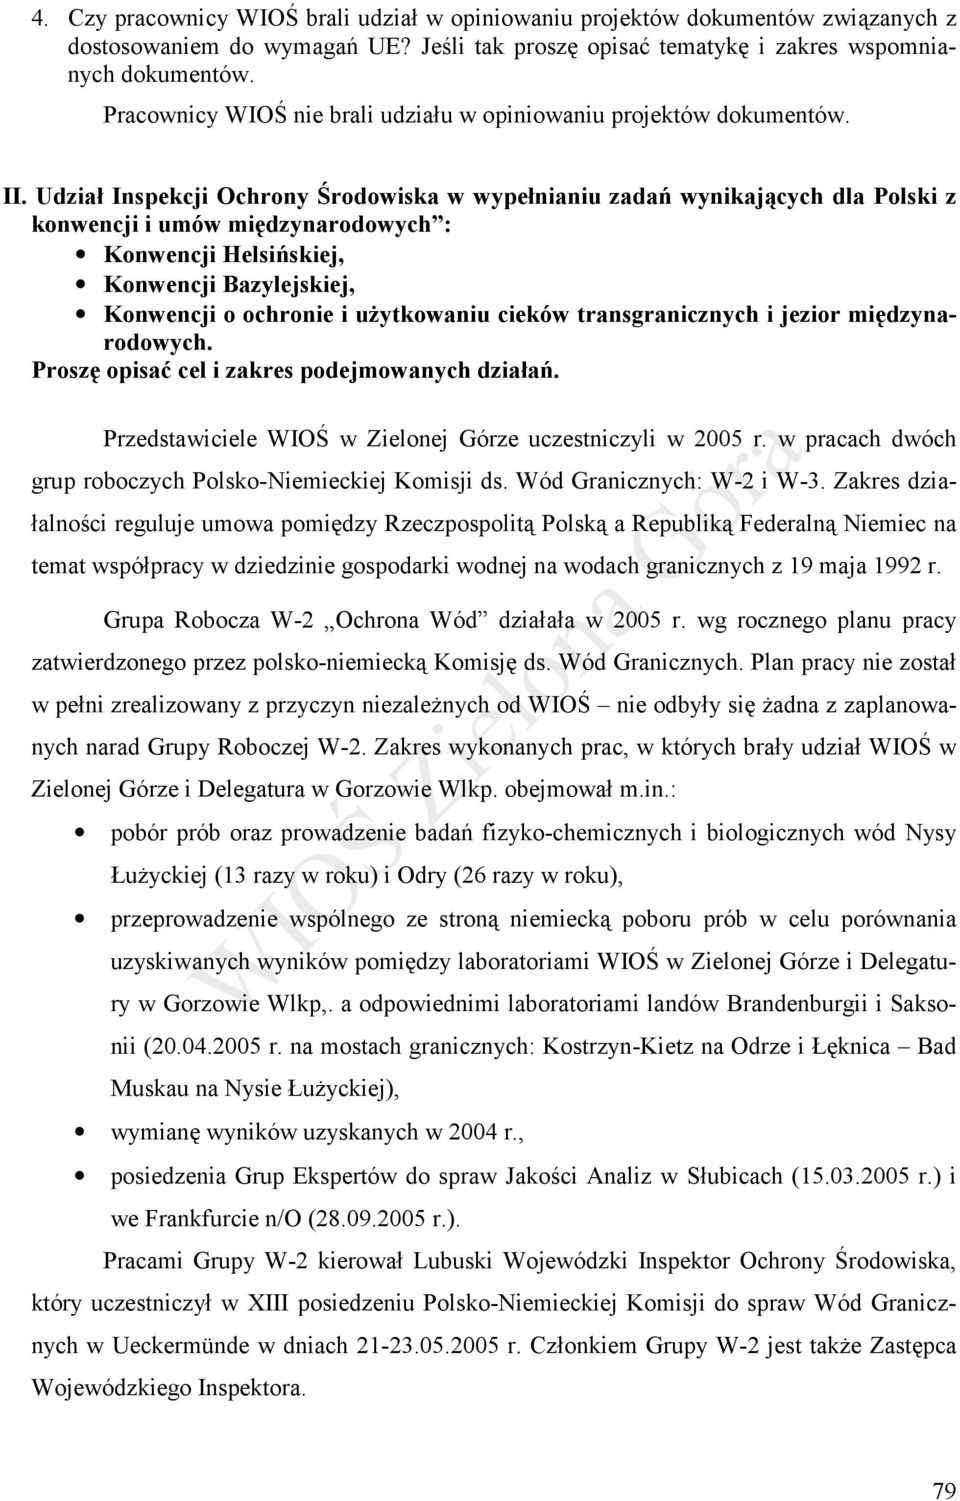 Udział Inspekcji Ochrony Środowiska w wypełnianiu zadań wynikających dla Polski z konwencji i umów międzynarodowych : Konwencji Helsińskiej, Konwencji Bazylejskiej, Konwencji o ochronie i użytkowaniu